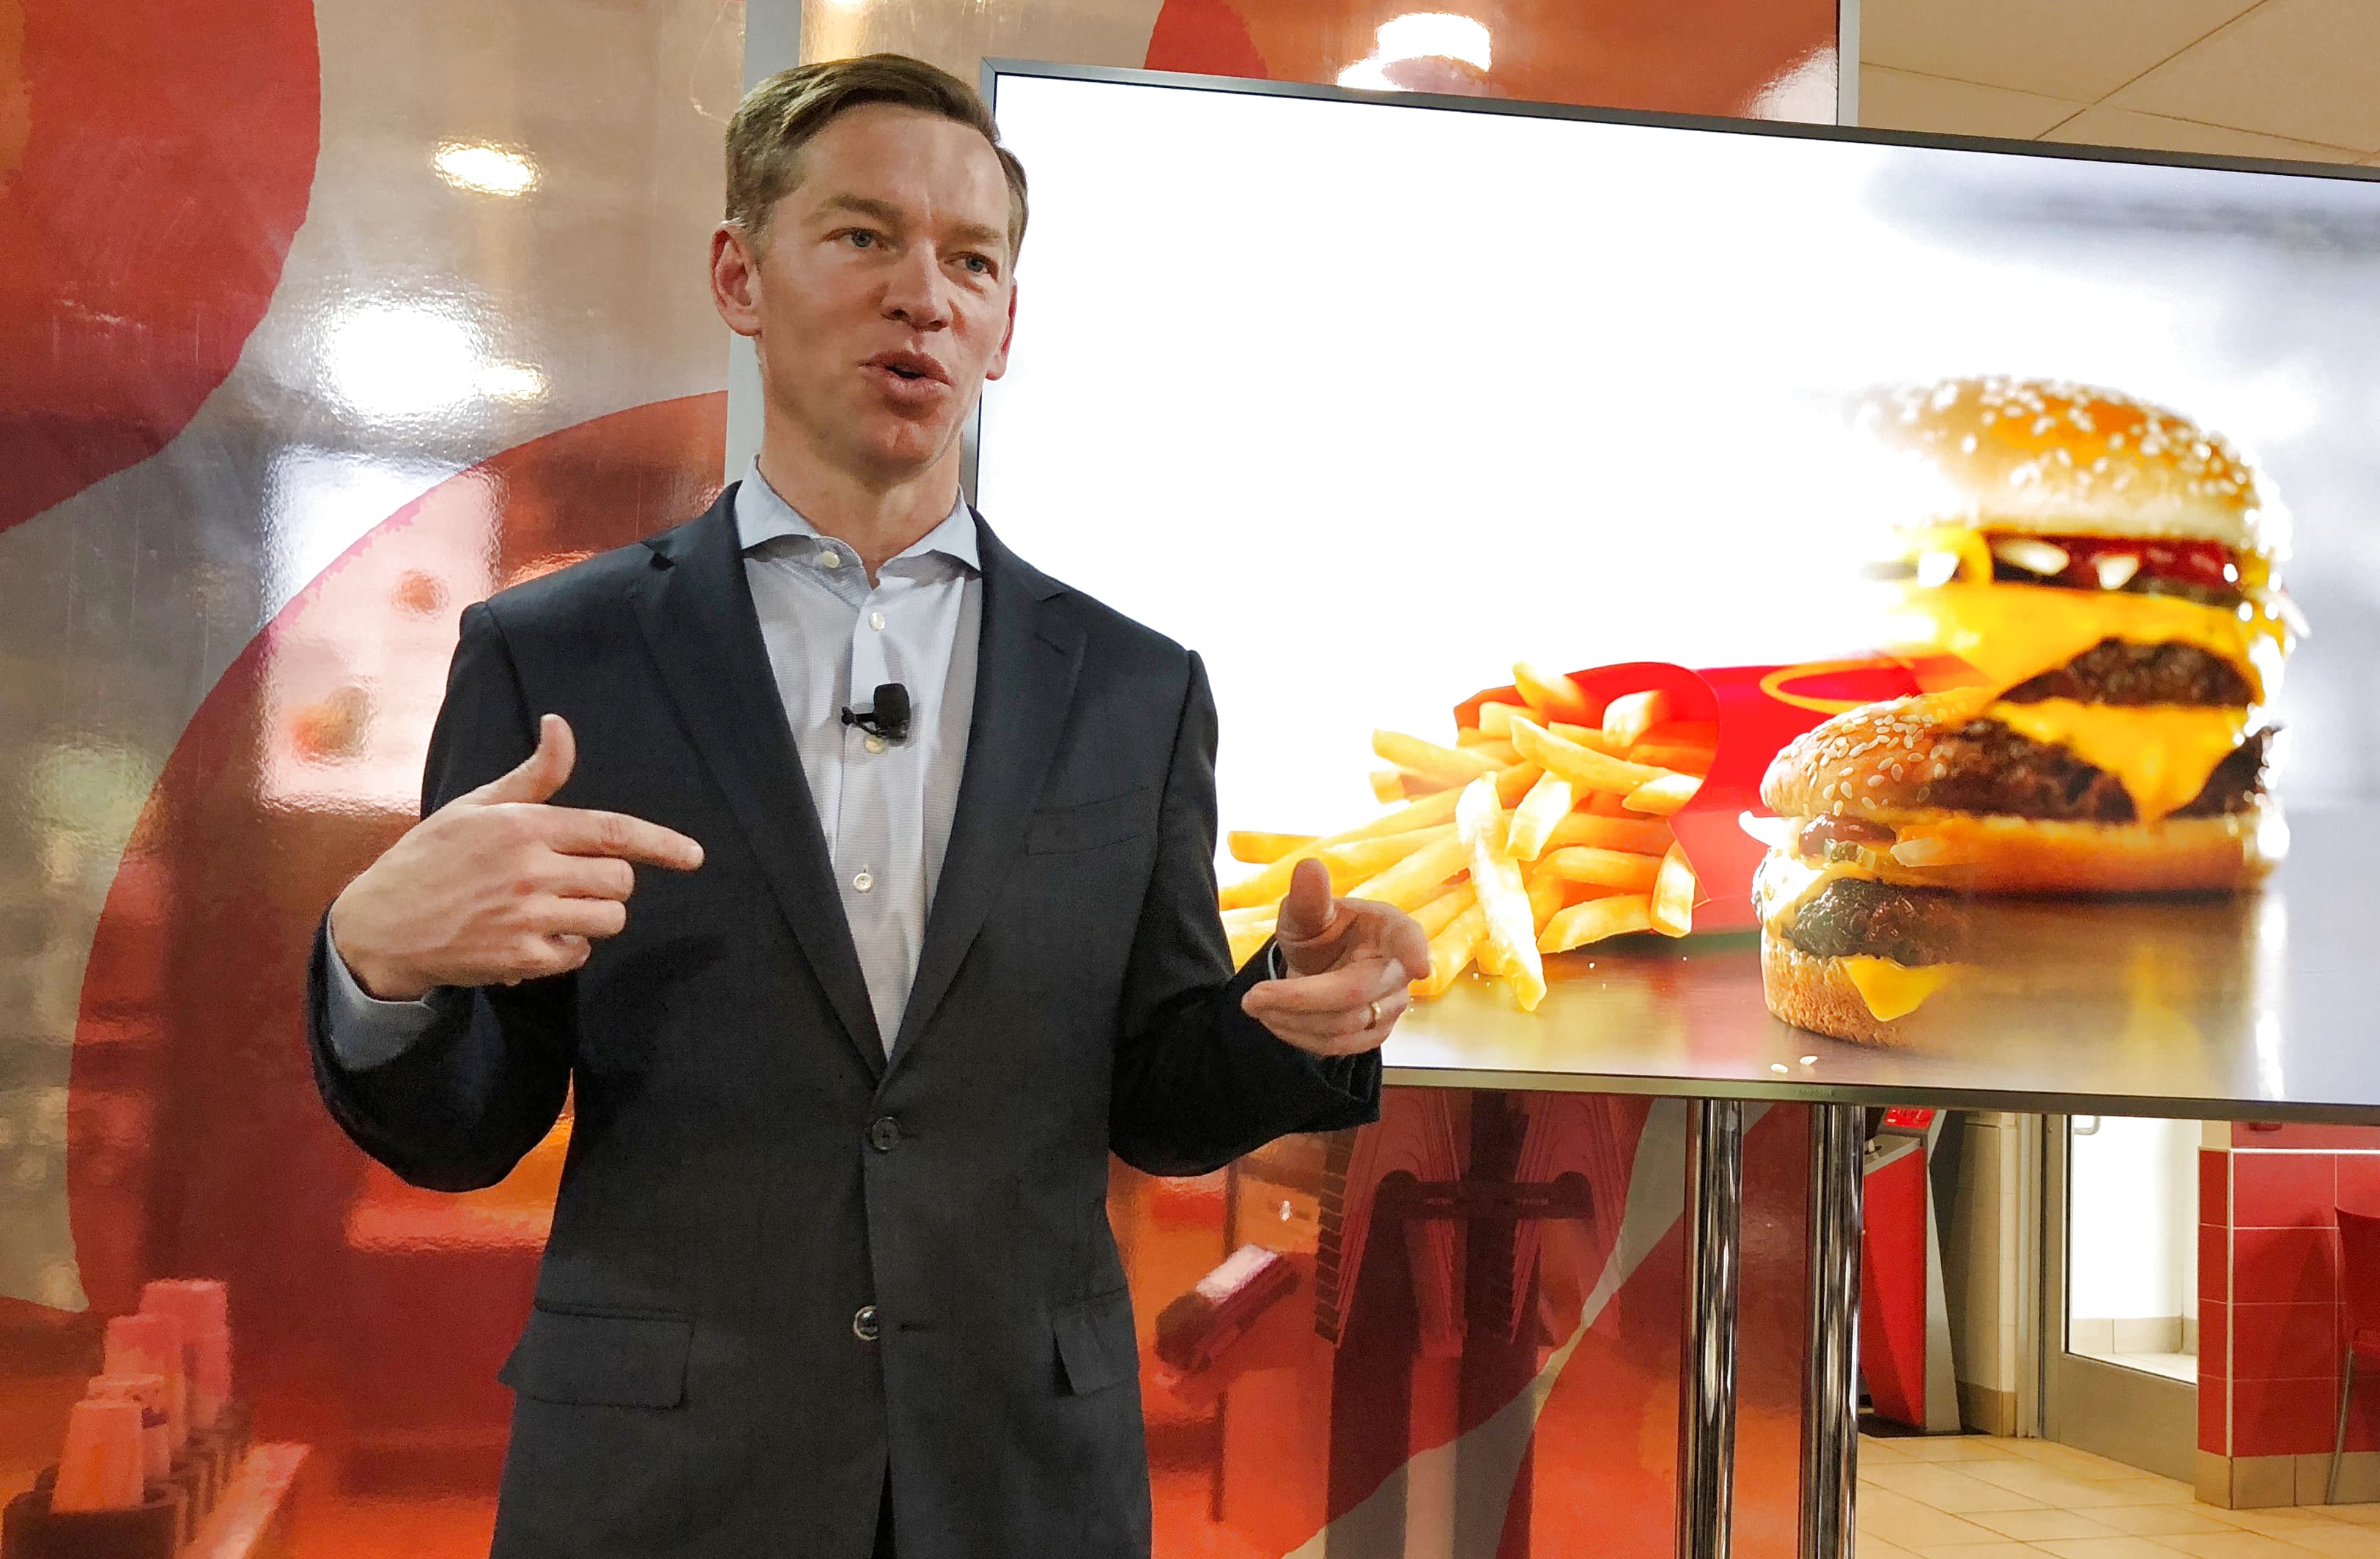 De CEO zegt dat klanten van McDonald’s zich verzetten tegen de prijsverhogingen